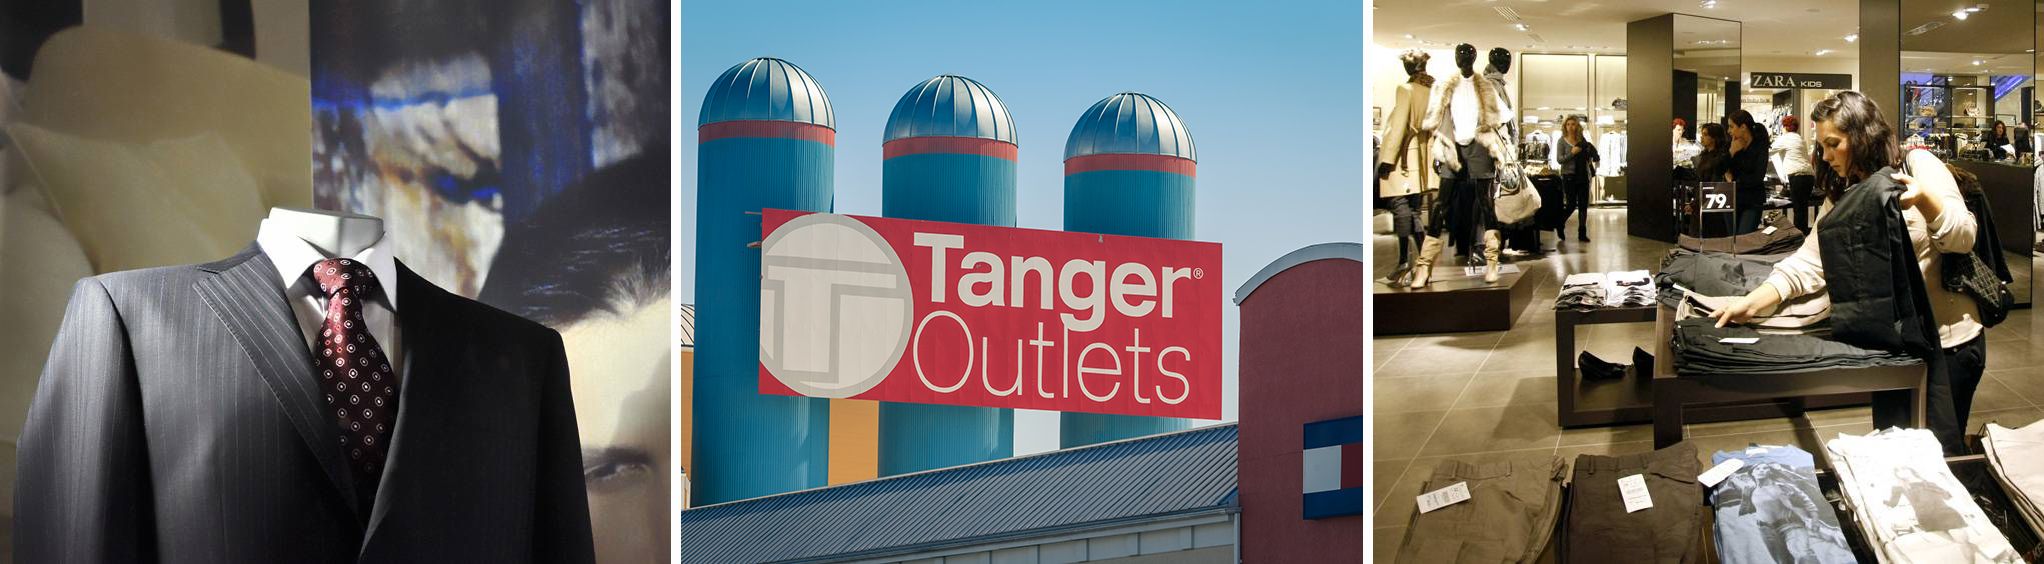 Tanger Outlet Center